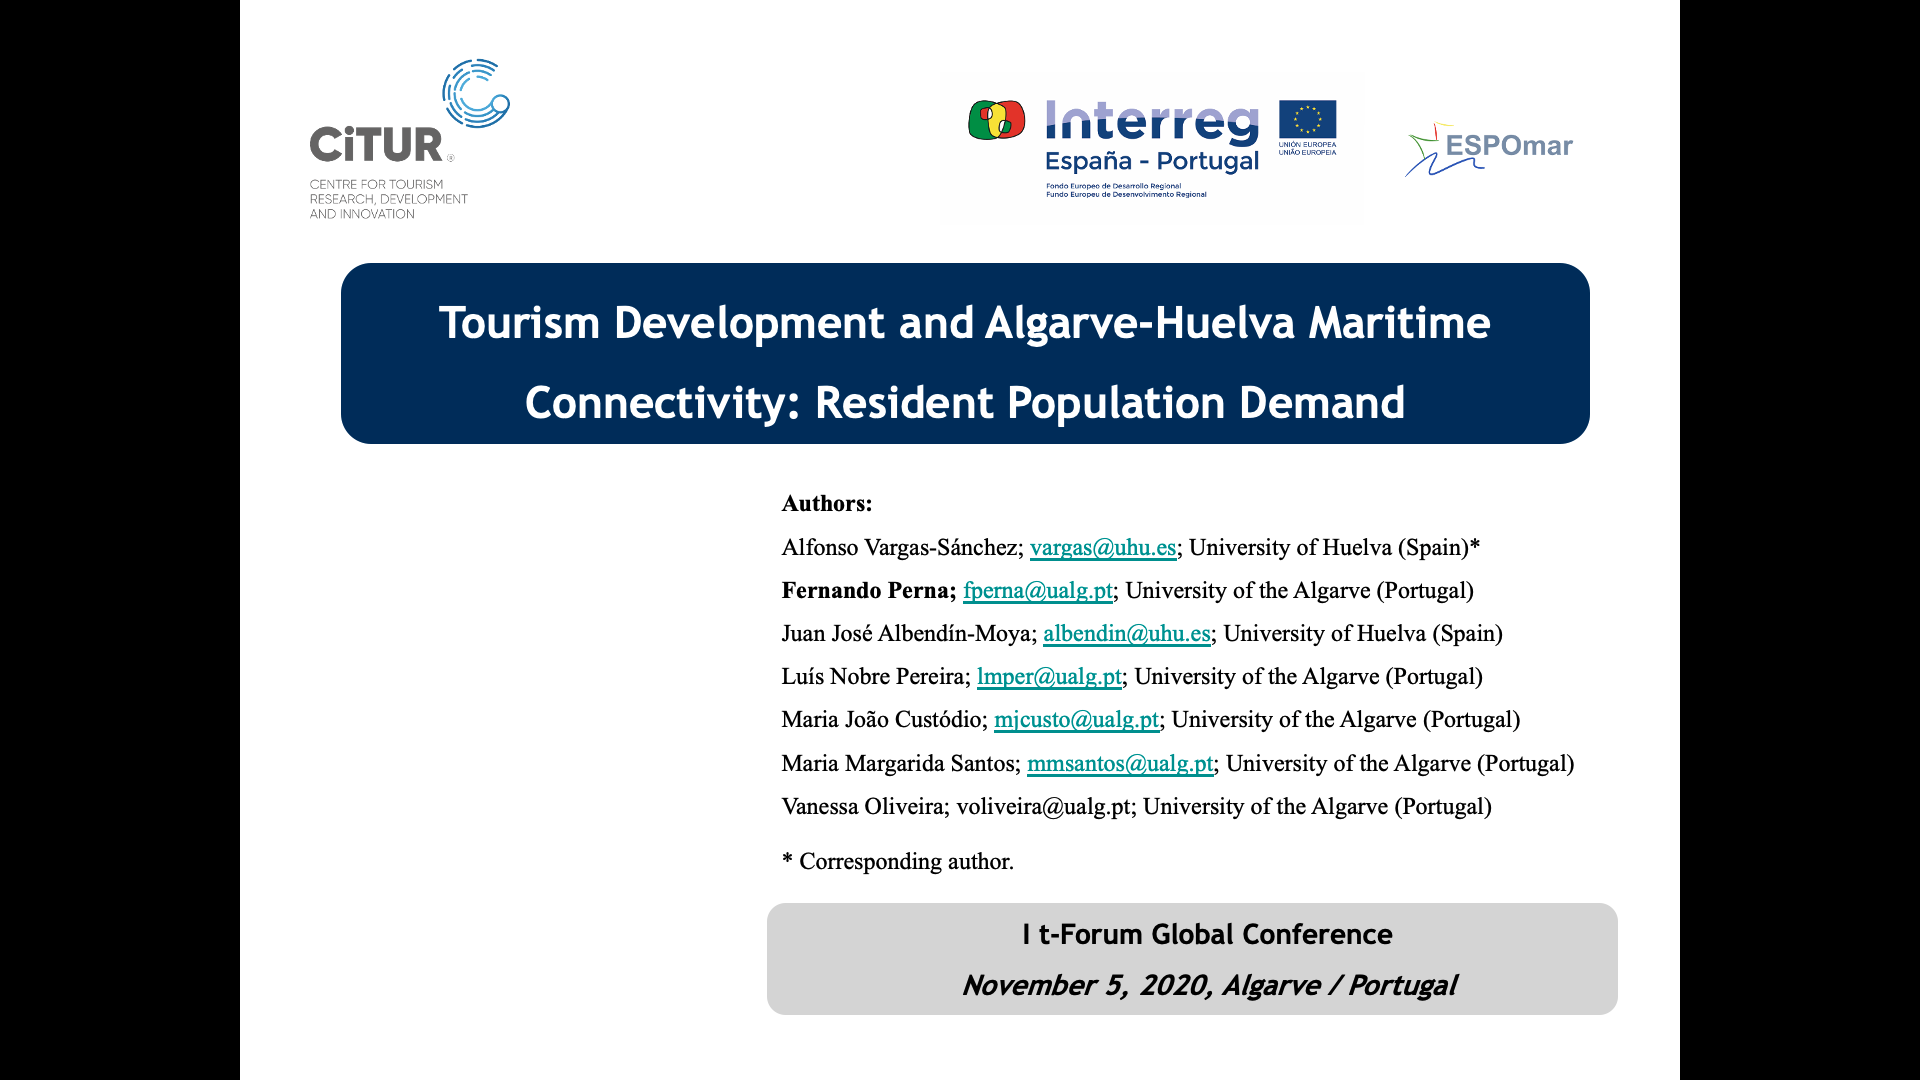 Conferencia t-Forum, en la Universidad del Algarve